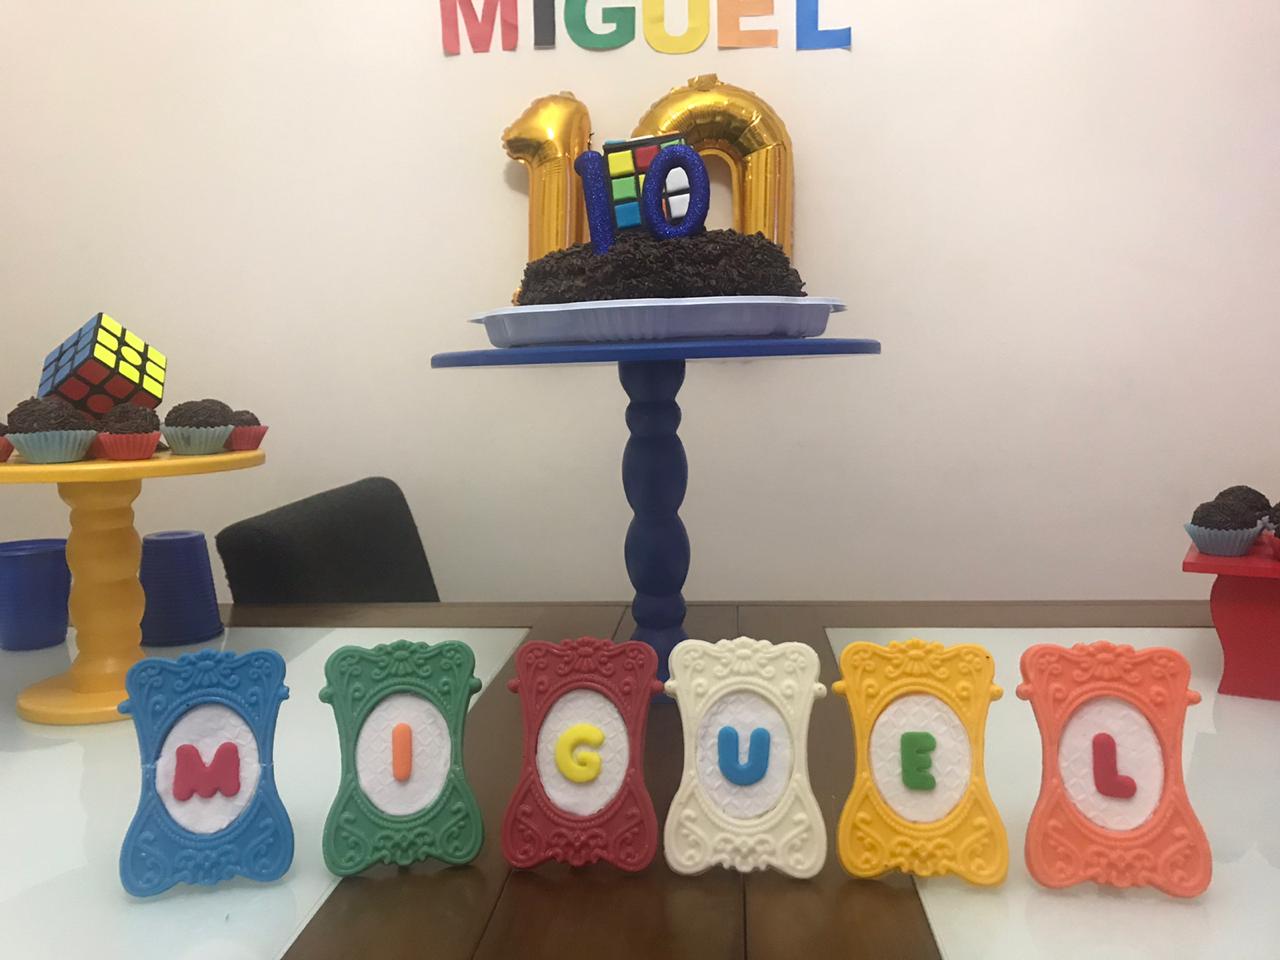 Os cubos mágicos de Miguel